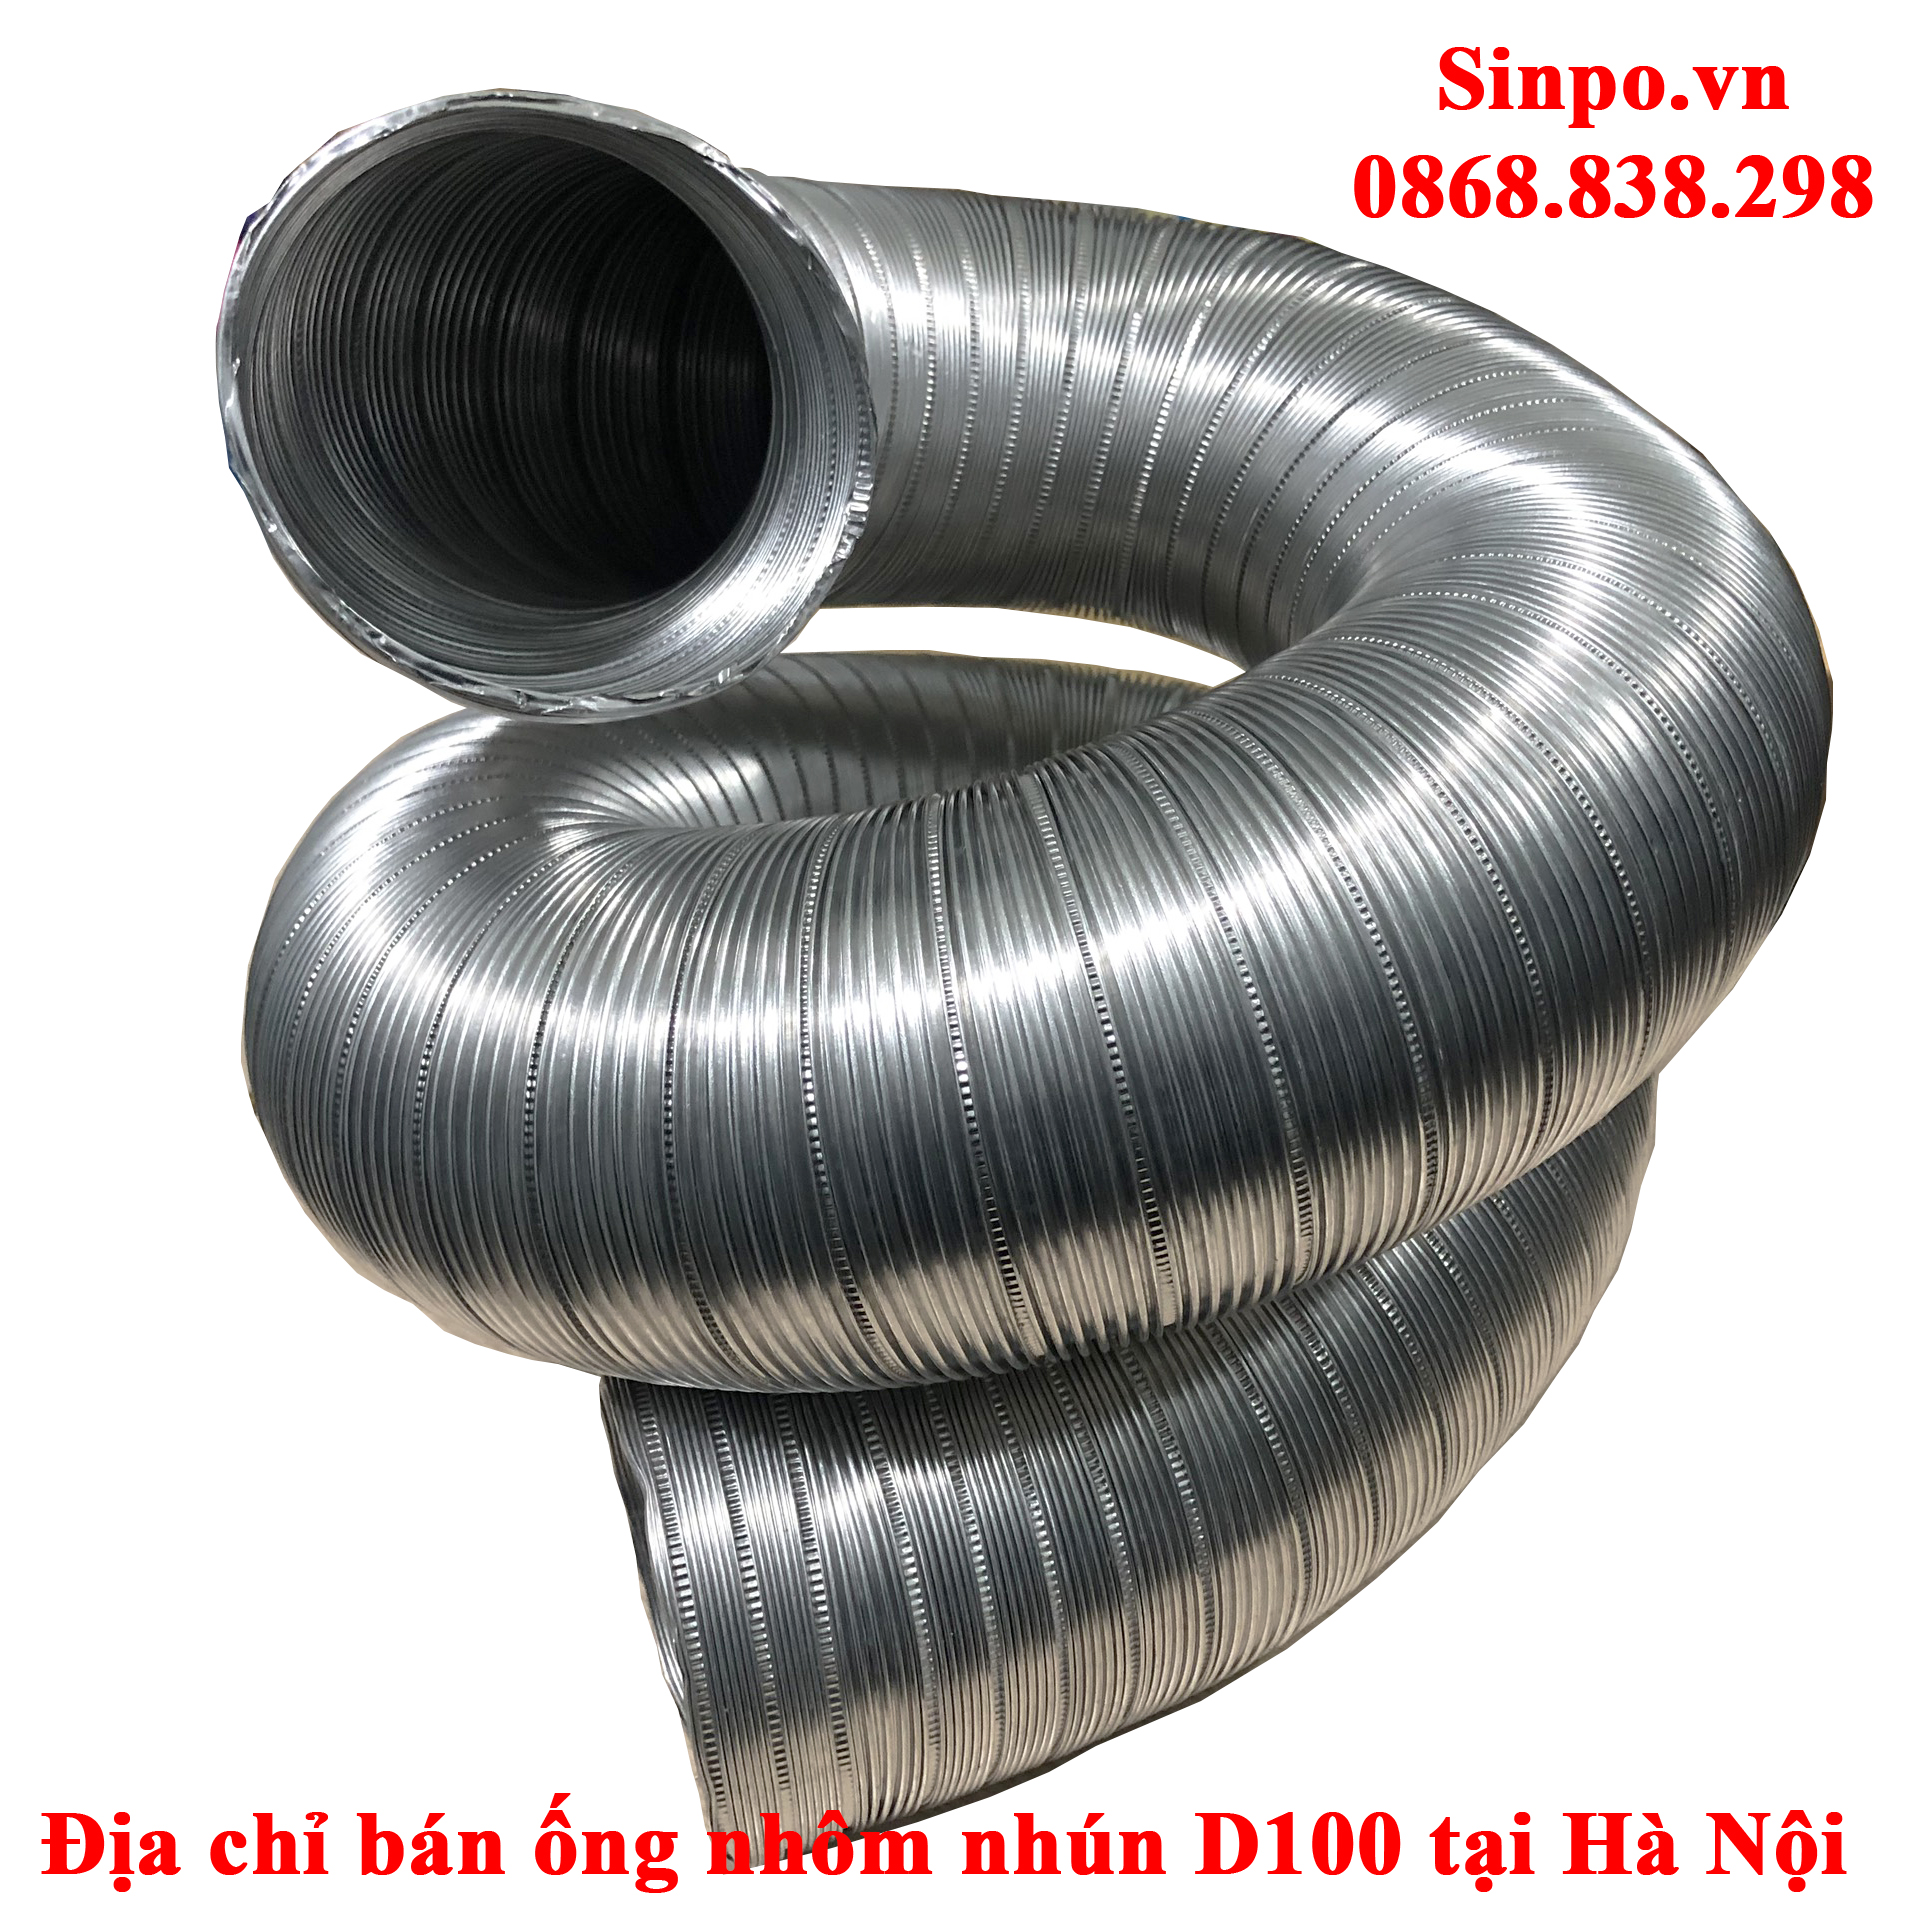 Địa chỉ bán ống nhôm nhún D100 tại Hà Nội